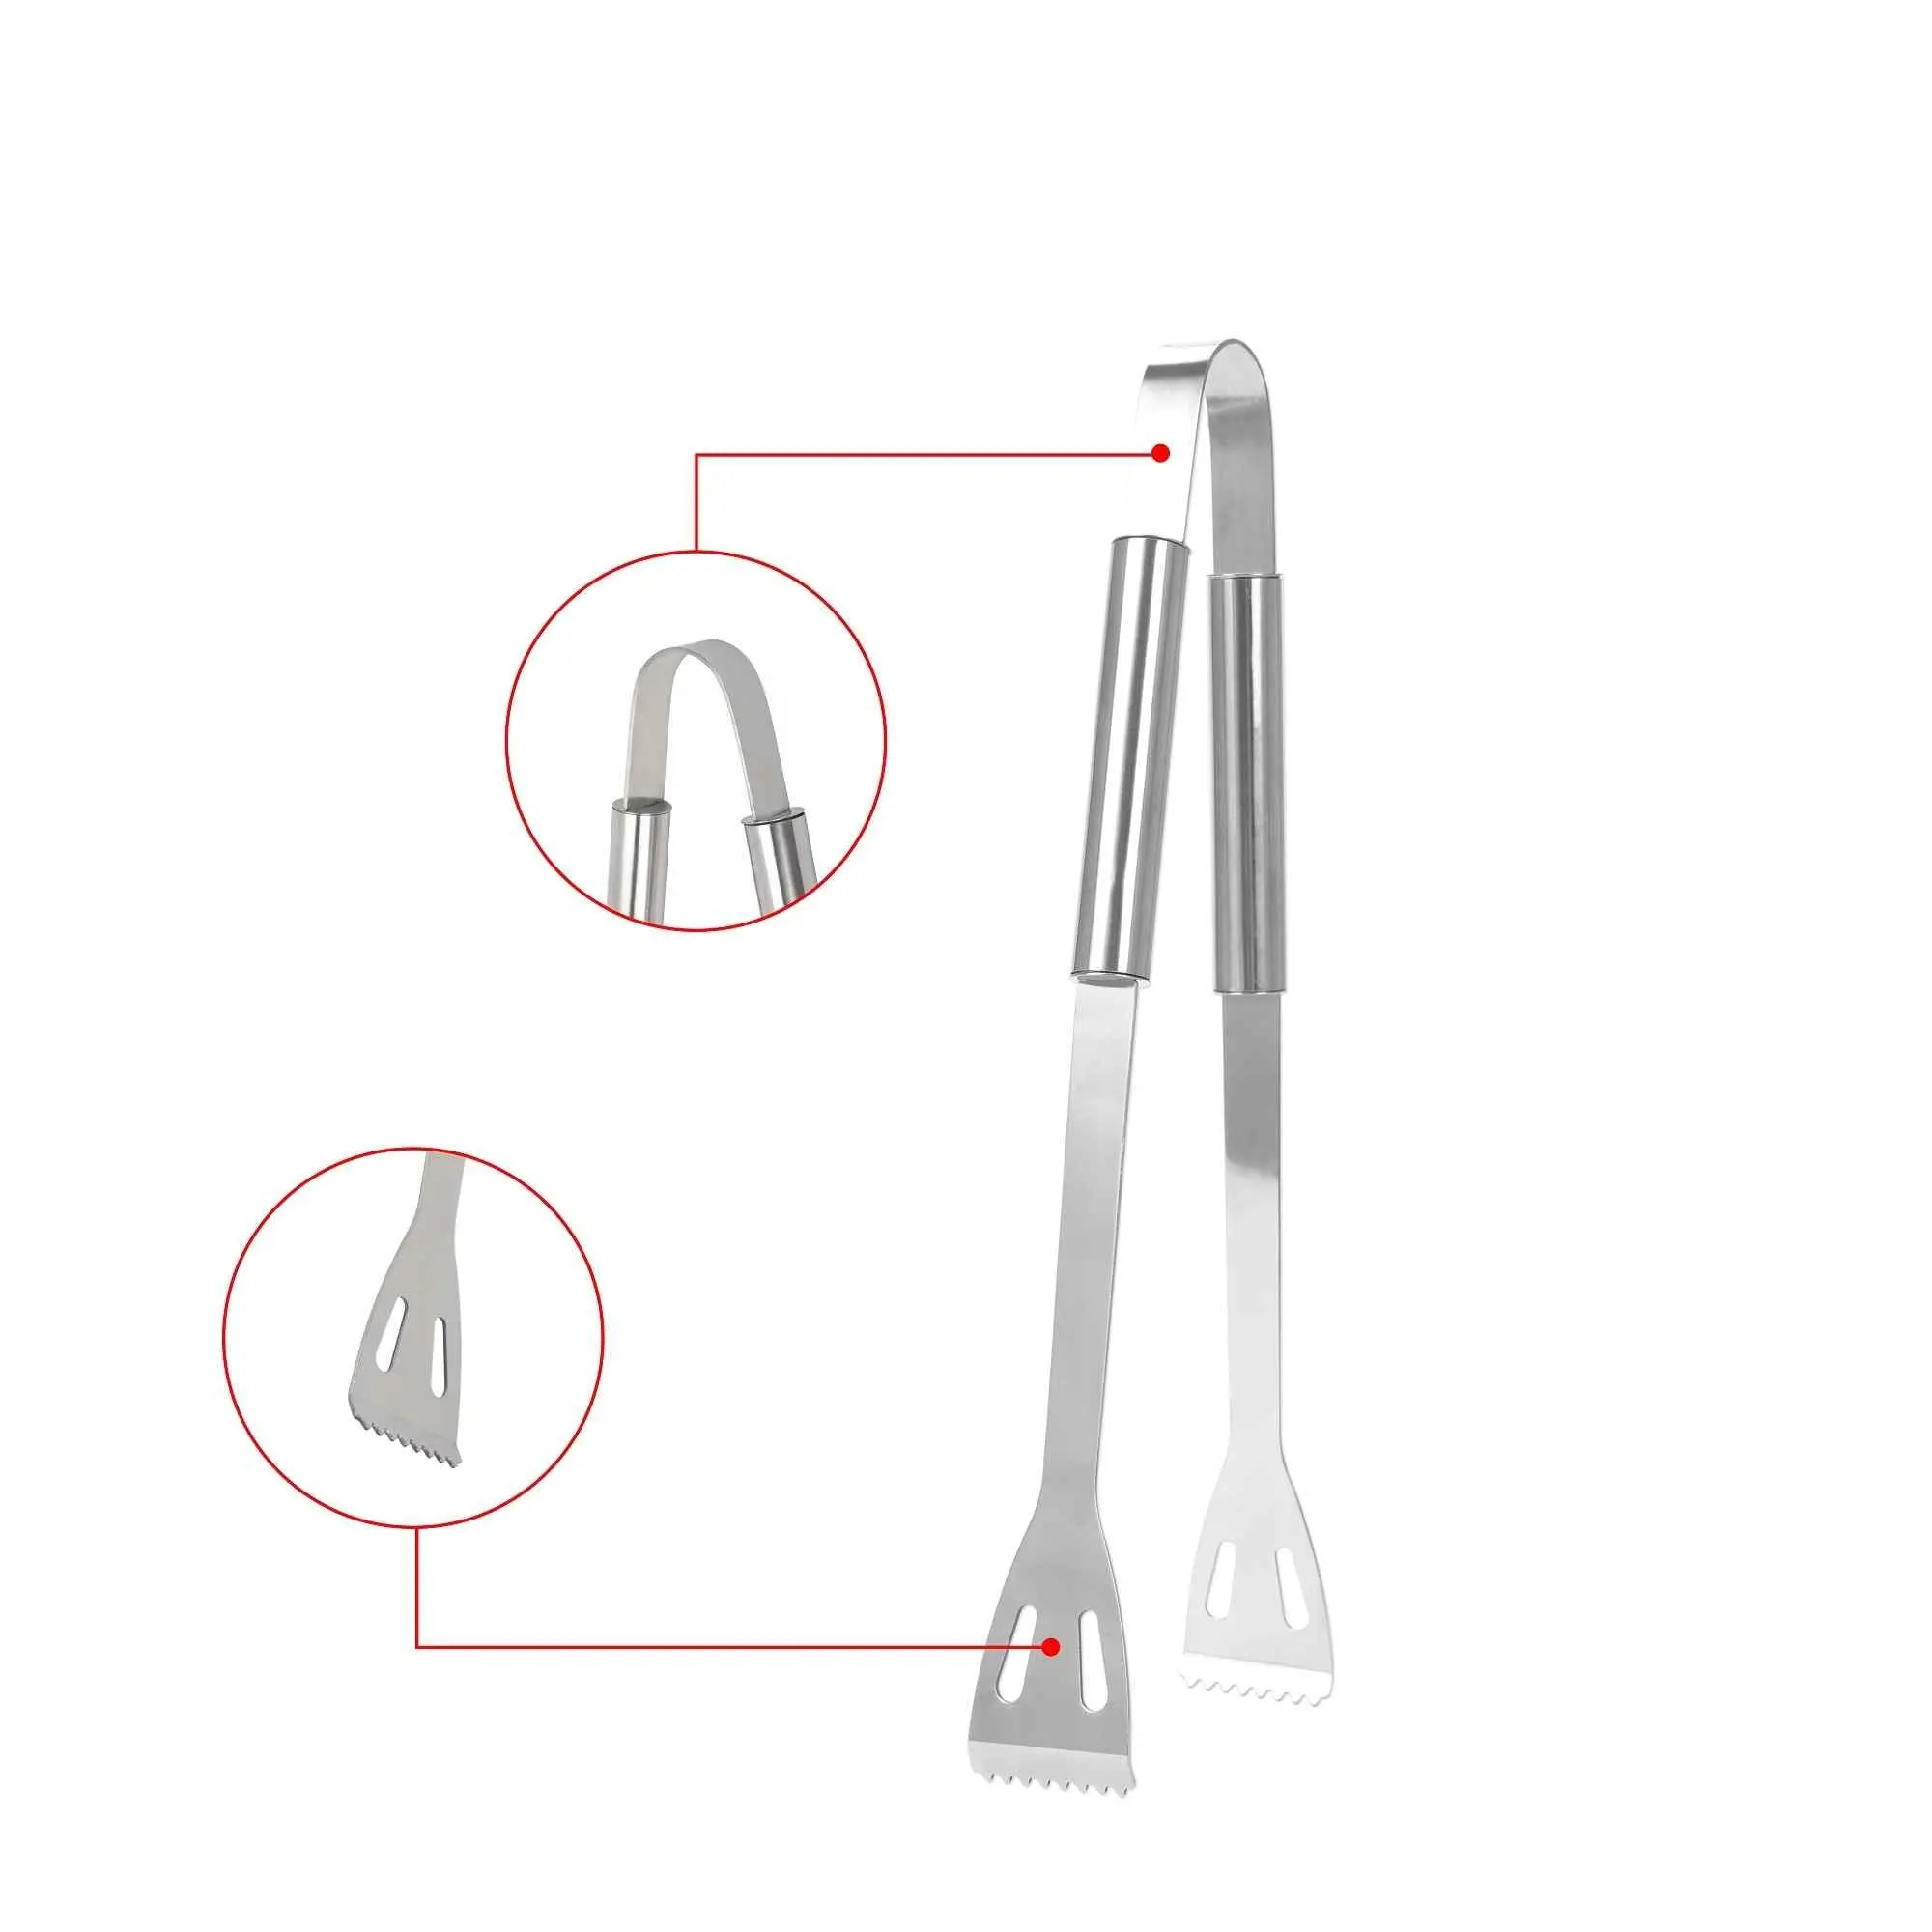 Rvs Bbq Tool Set Met Tong/Clip, Spatel/Schop, vork Koken Kit Gebruiksvoorwerpen Voor Barbecue/Koken/Grill